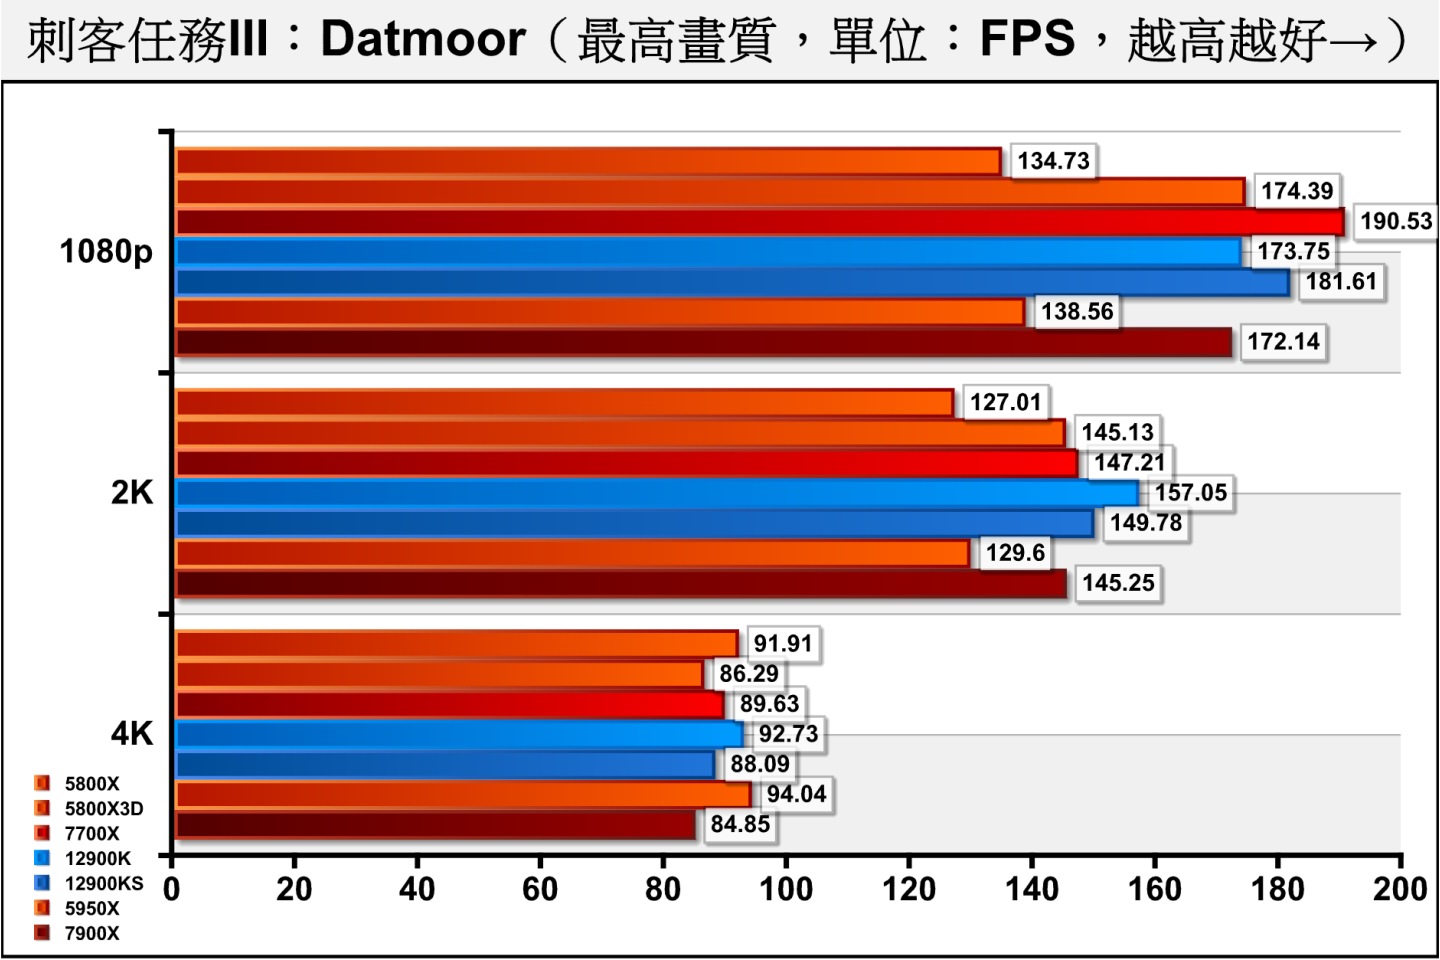 《刺客任務III》Dartmoor（達特穆爾）測試項目則包含許多槍枝射擊與爆炸效果，充滿物理與粒模擬，對處理器與顯示卡的考驗更加嚴苛。在能瓶頸落於處理器的1080p解析度項目，仍由Ryzen 7 7700X表現最為出色。